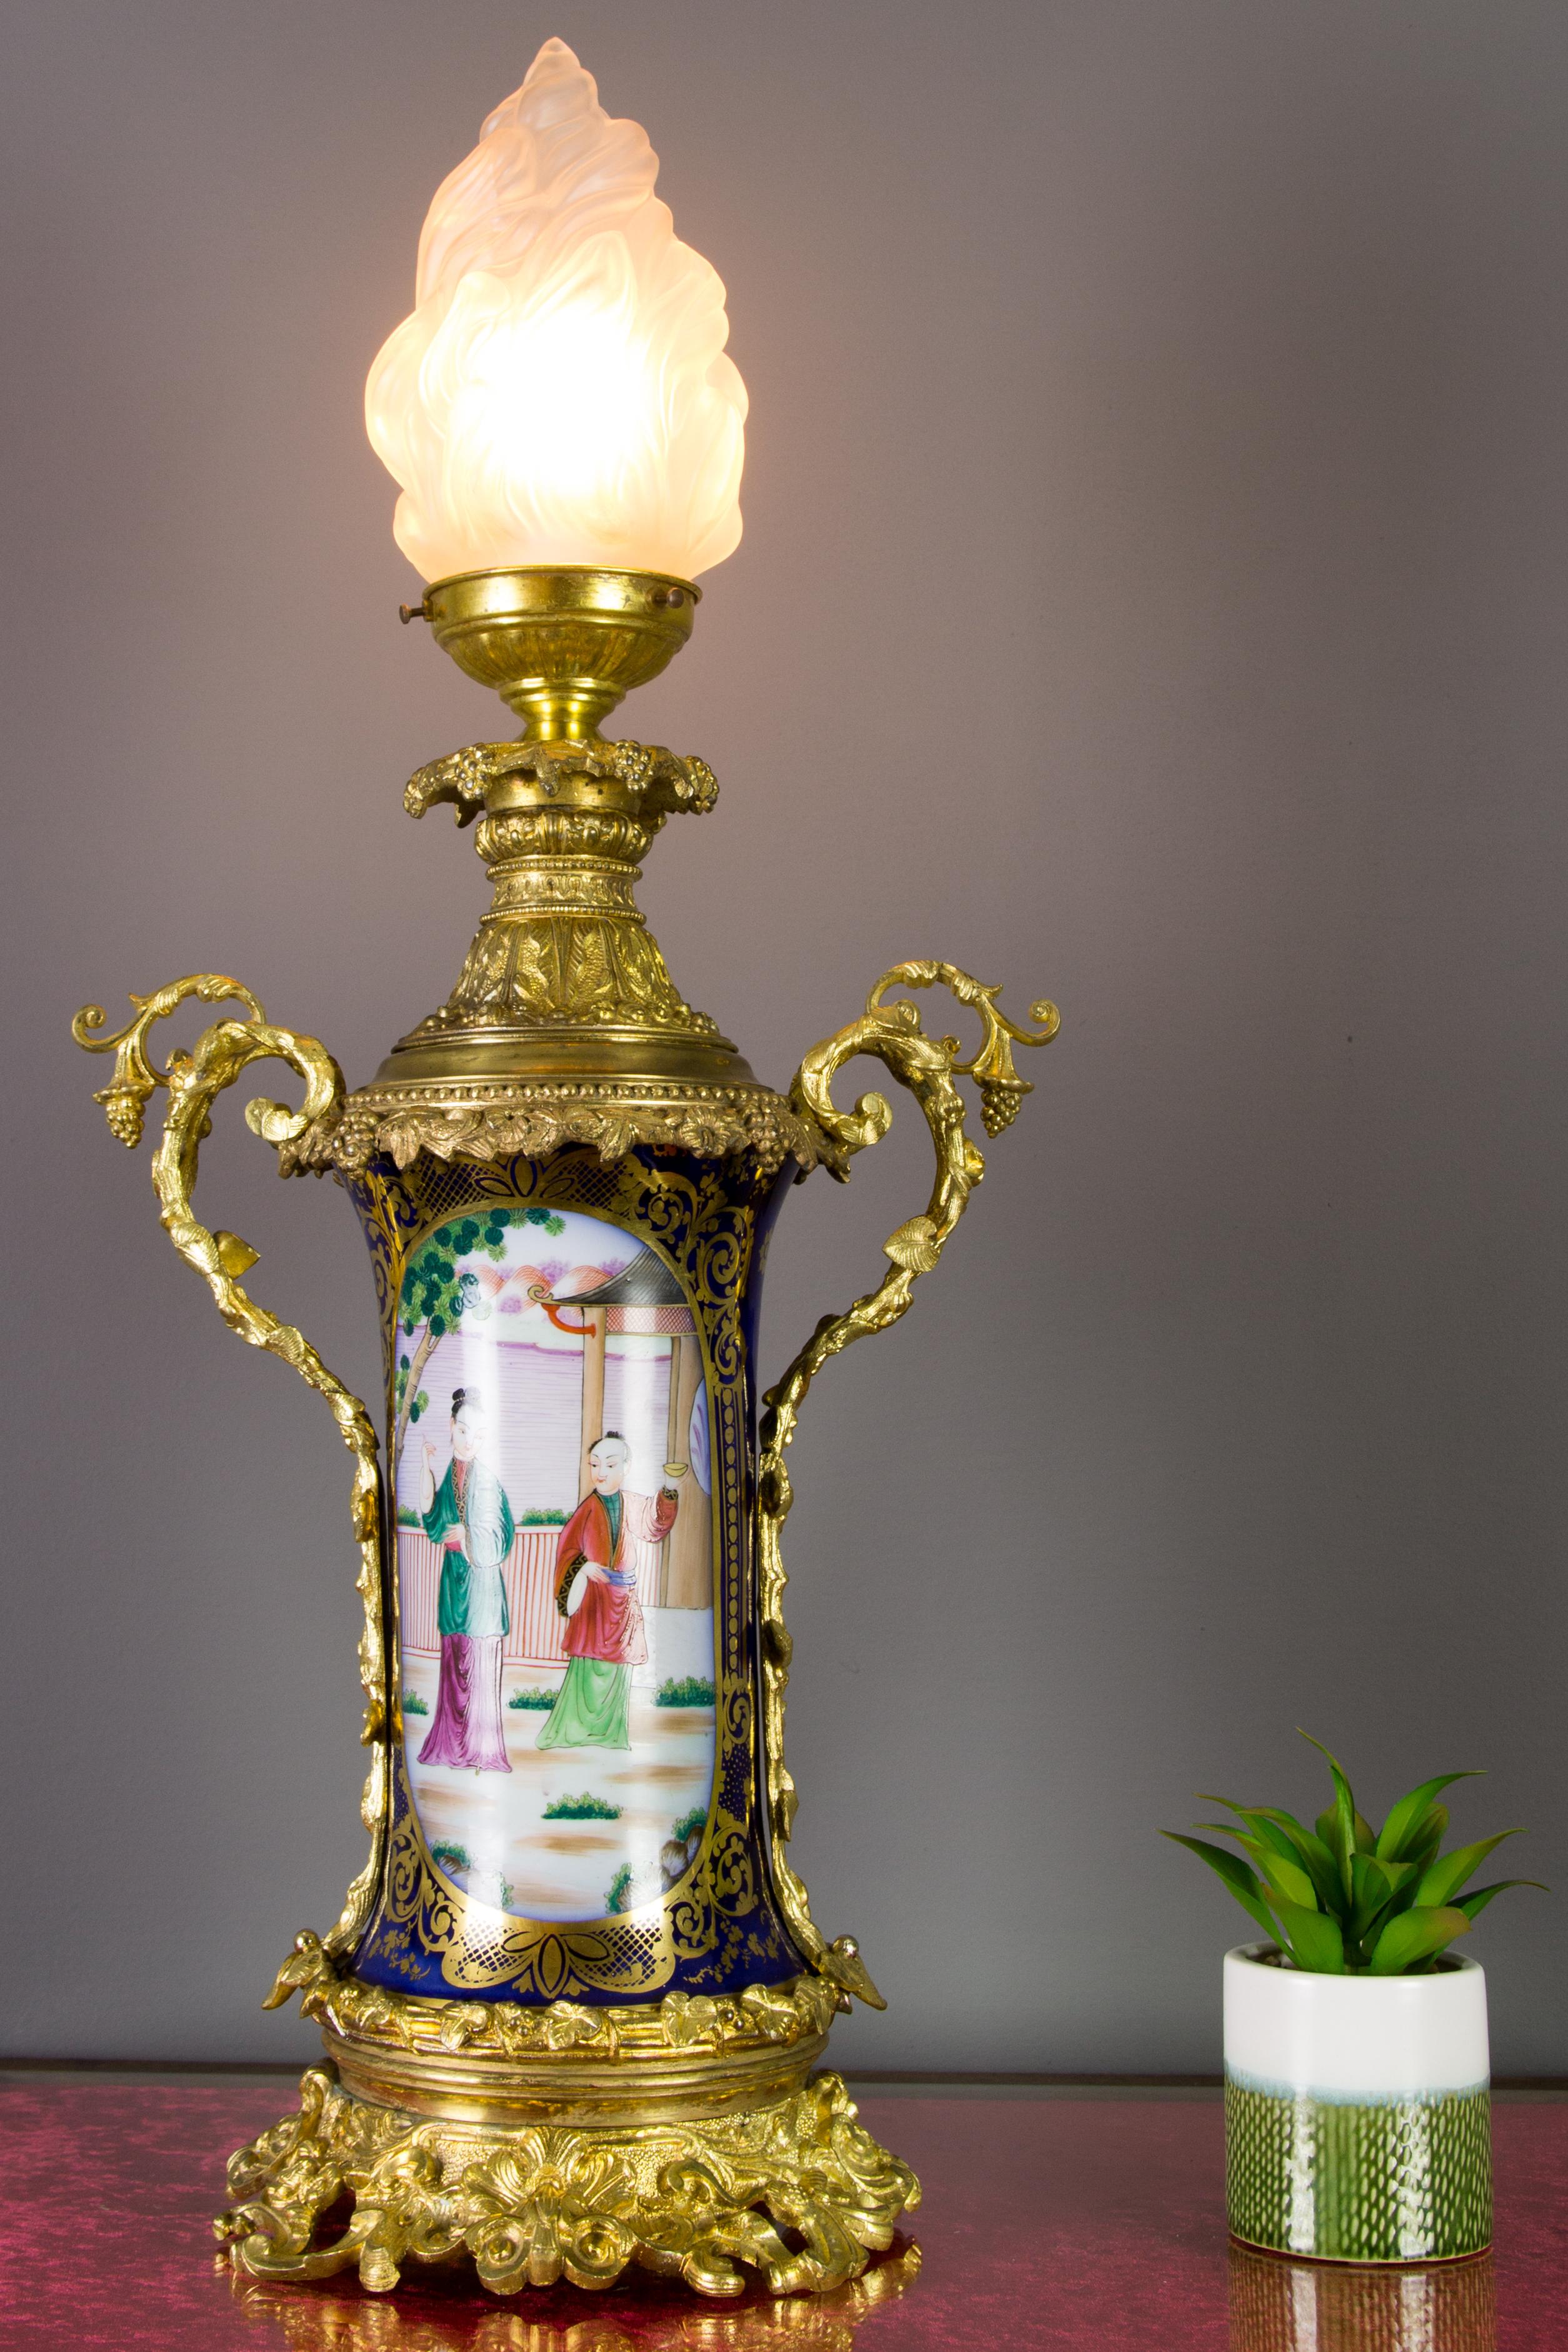 Diese erstaunliche und große Öllampe aus dem späten 19. Jahrhundert steht auf einem Sockel aus vergoldeter Bronze und ist mit einer Kappe und Griffen aus Bronze versehen. Der Korpus ist aus kobaltblauem, handbemaltem Porzellan und zeigt bunte Szenen